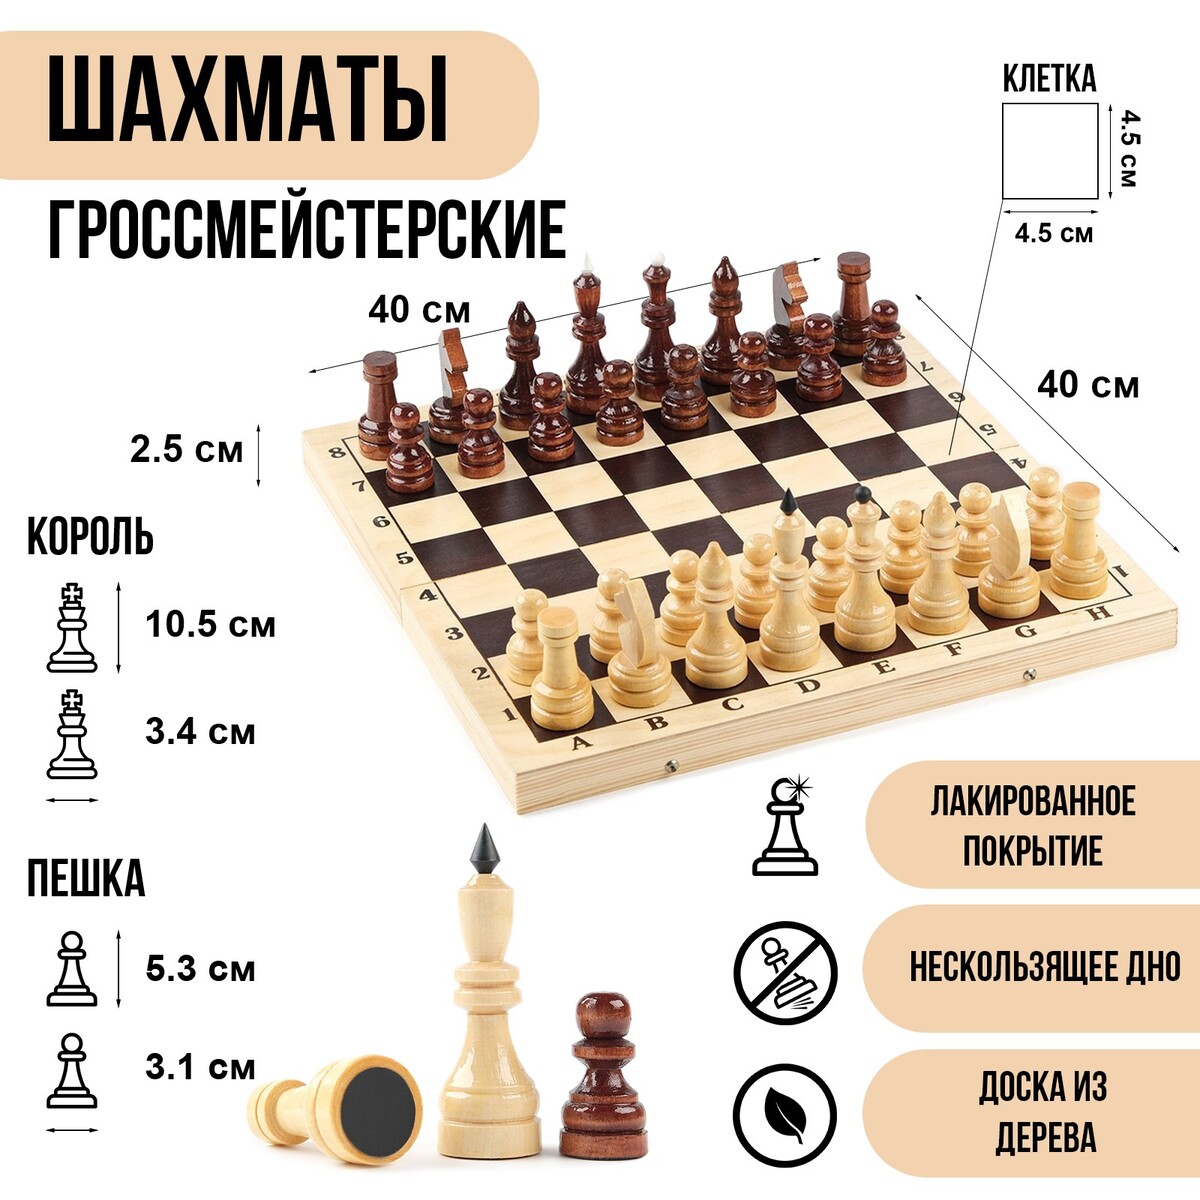 Шахматы деревянные гроссмейстерские, турнирные, король h-10.5 см, пешка h-5.3 см шахматы деревянные 50х50 см